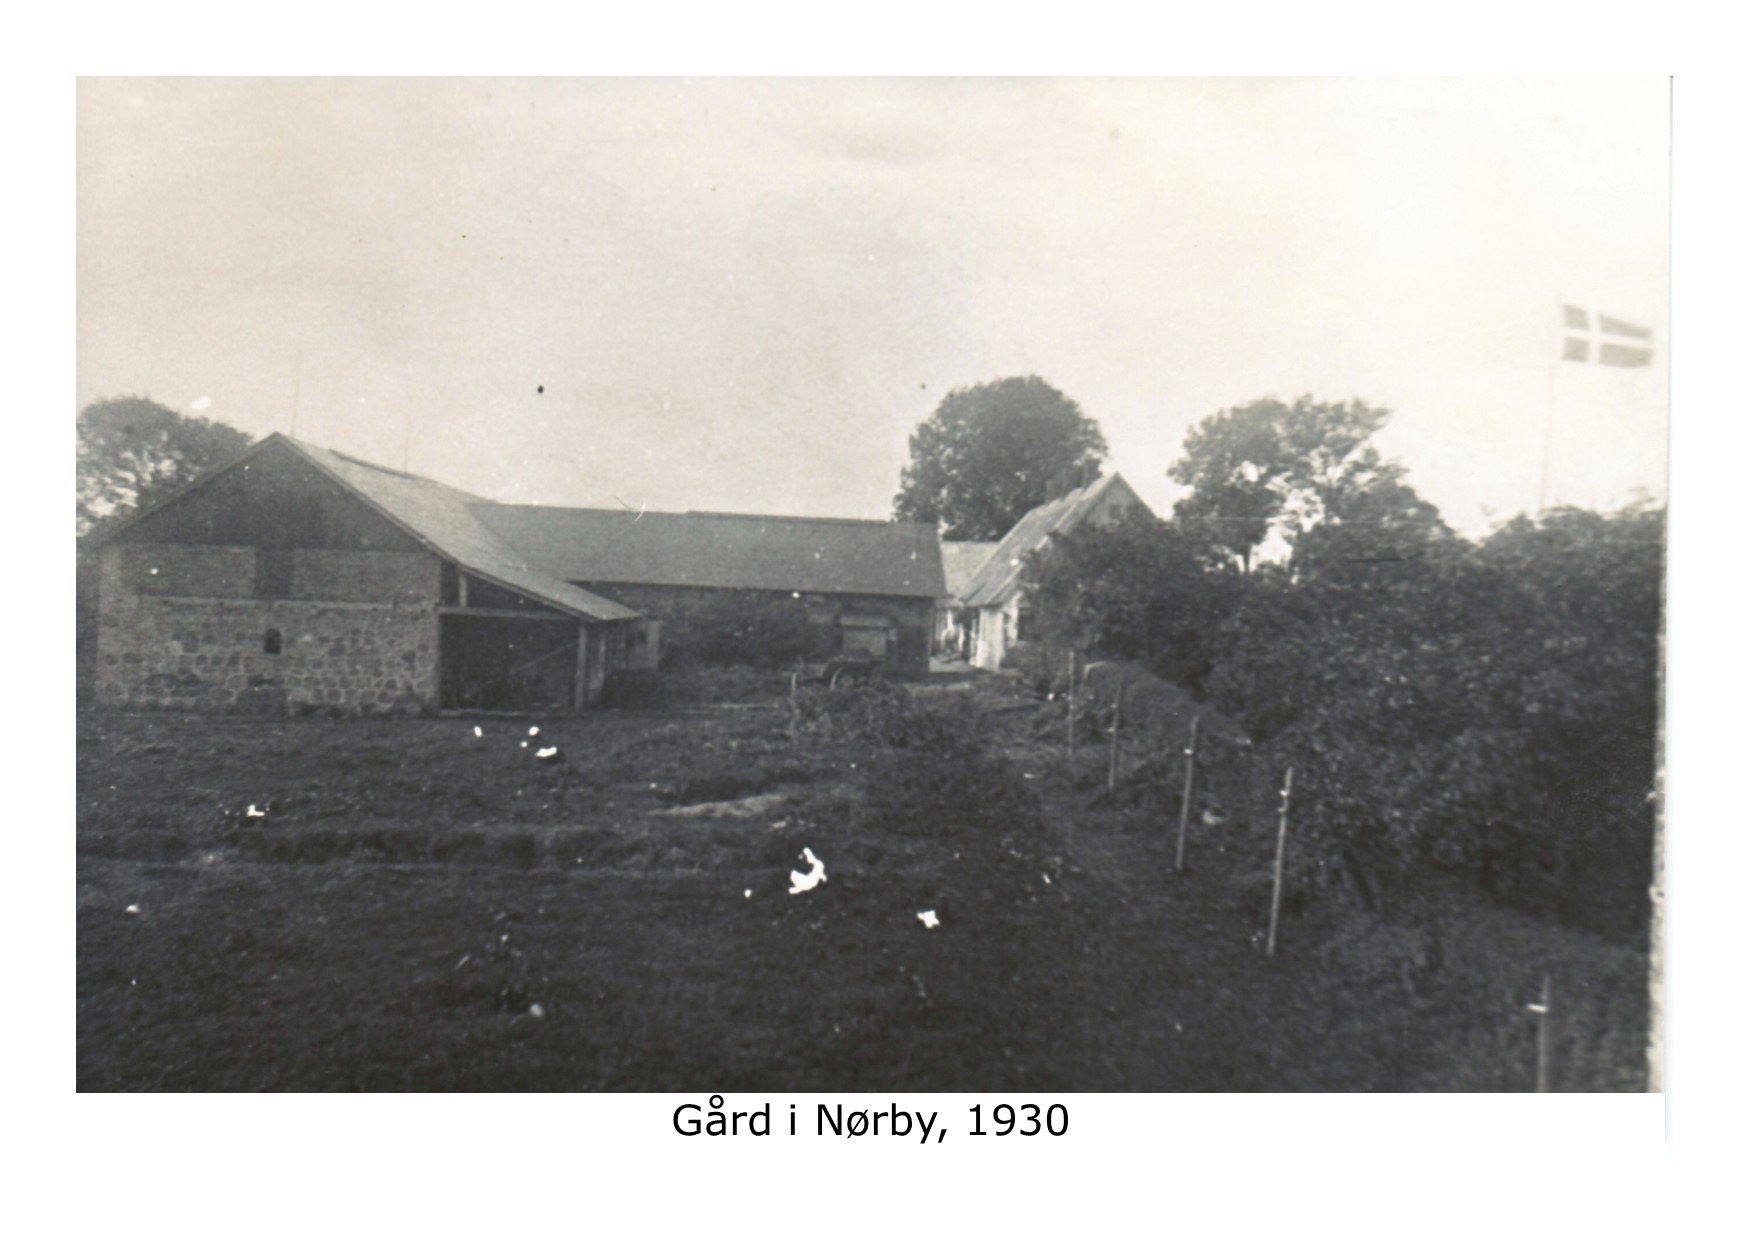 Gård i Nørby - 1930 